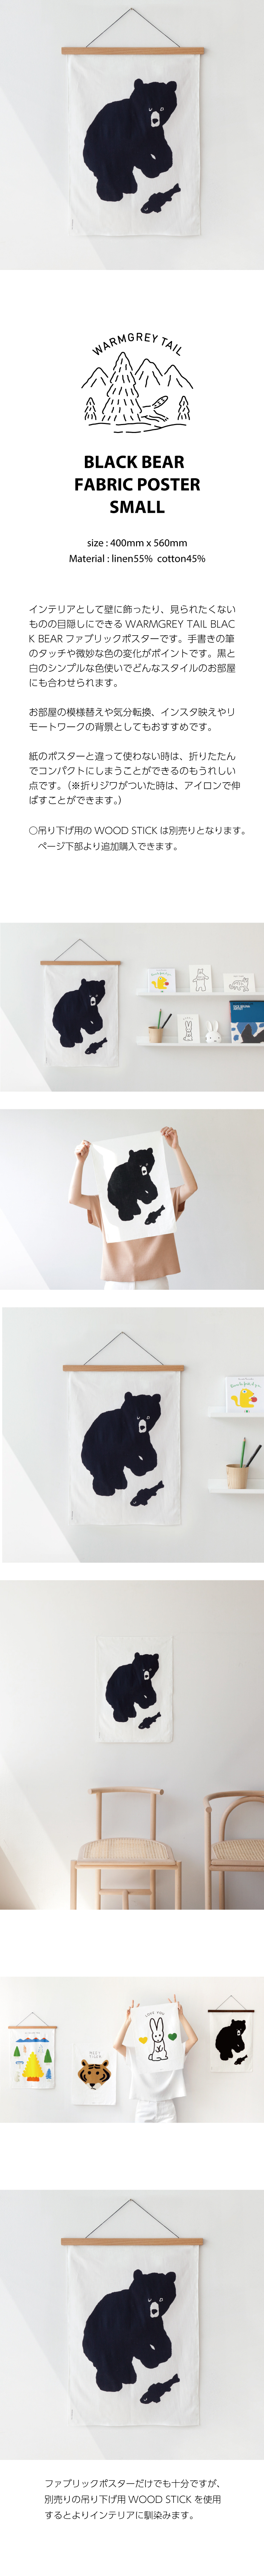 楽天市場 New Warmgreytail Black Bear Fabric Poster Small ファブリック ポスター タペストリー 韓国 ブランド 雑貨 インテリア 壁掛け かわいい おしゃれ くま イラスト 日本 販売 ギフト プレゼント 送料無料 Astore